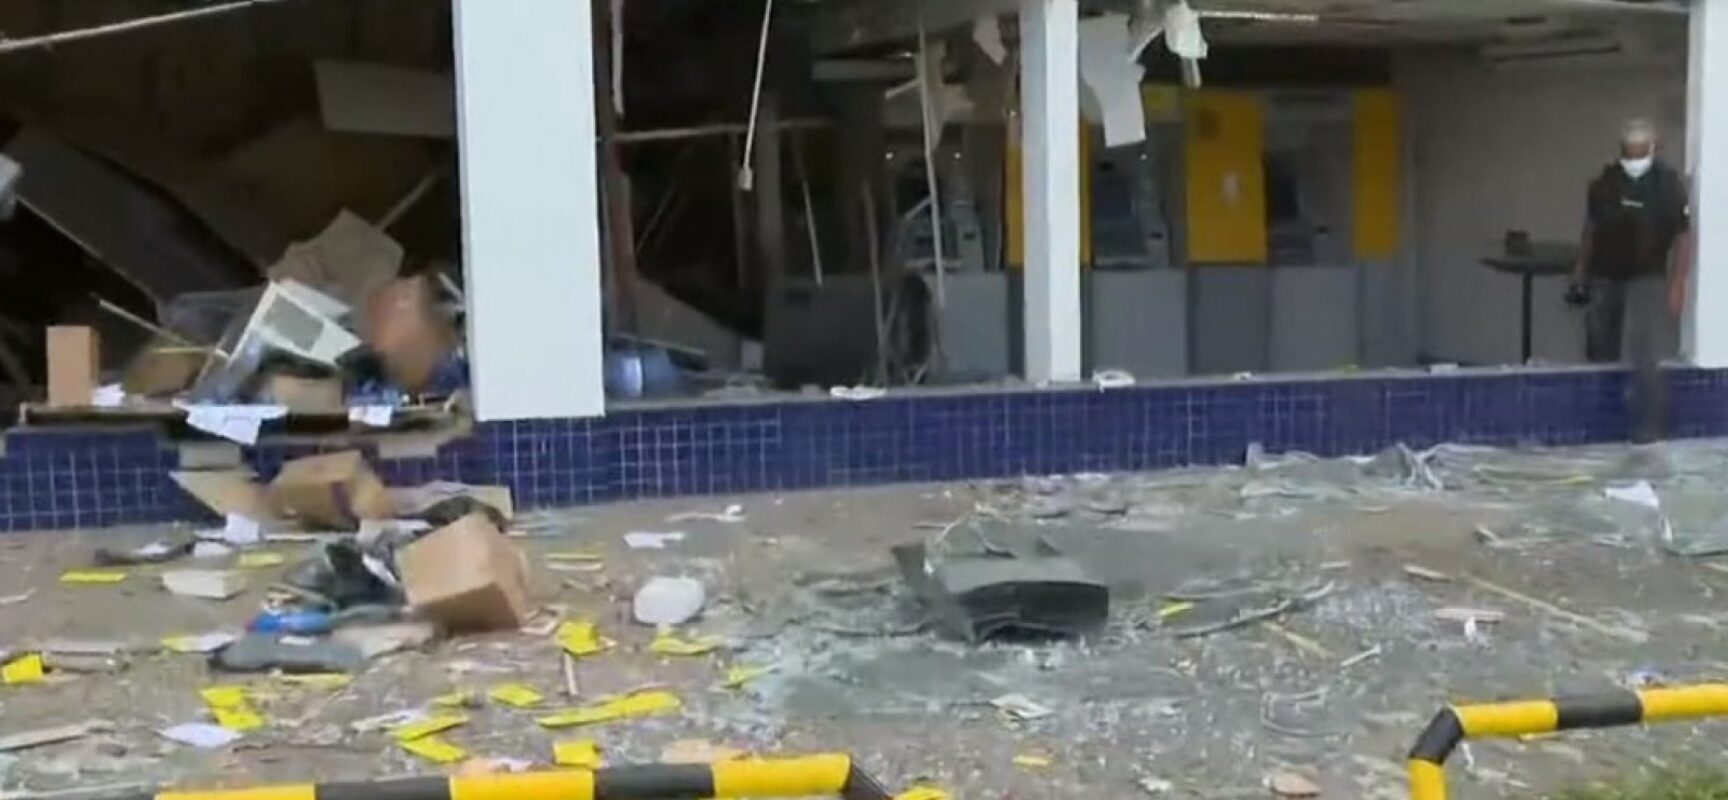 Pandemia tem impulsionado ataques a bancos na Bahia, diz analista em segurança